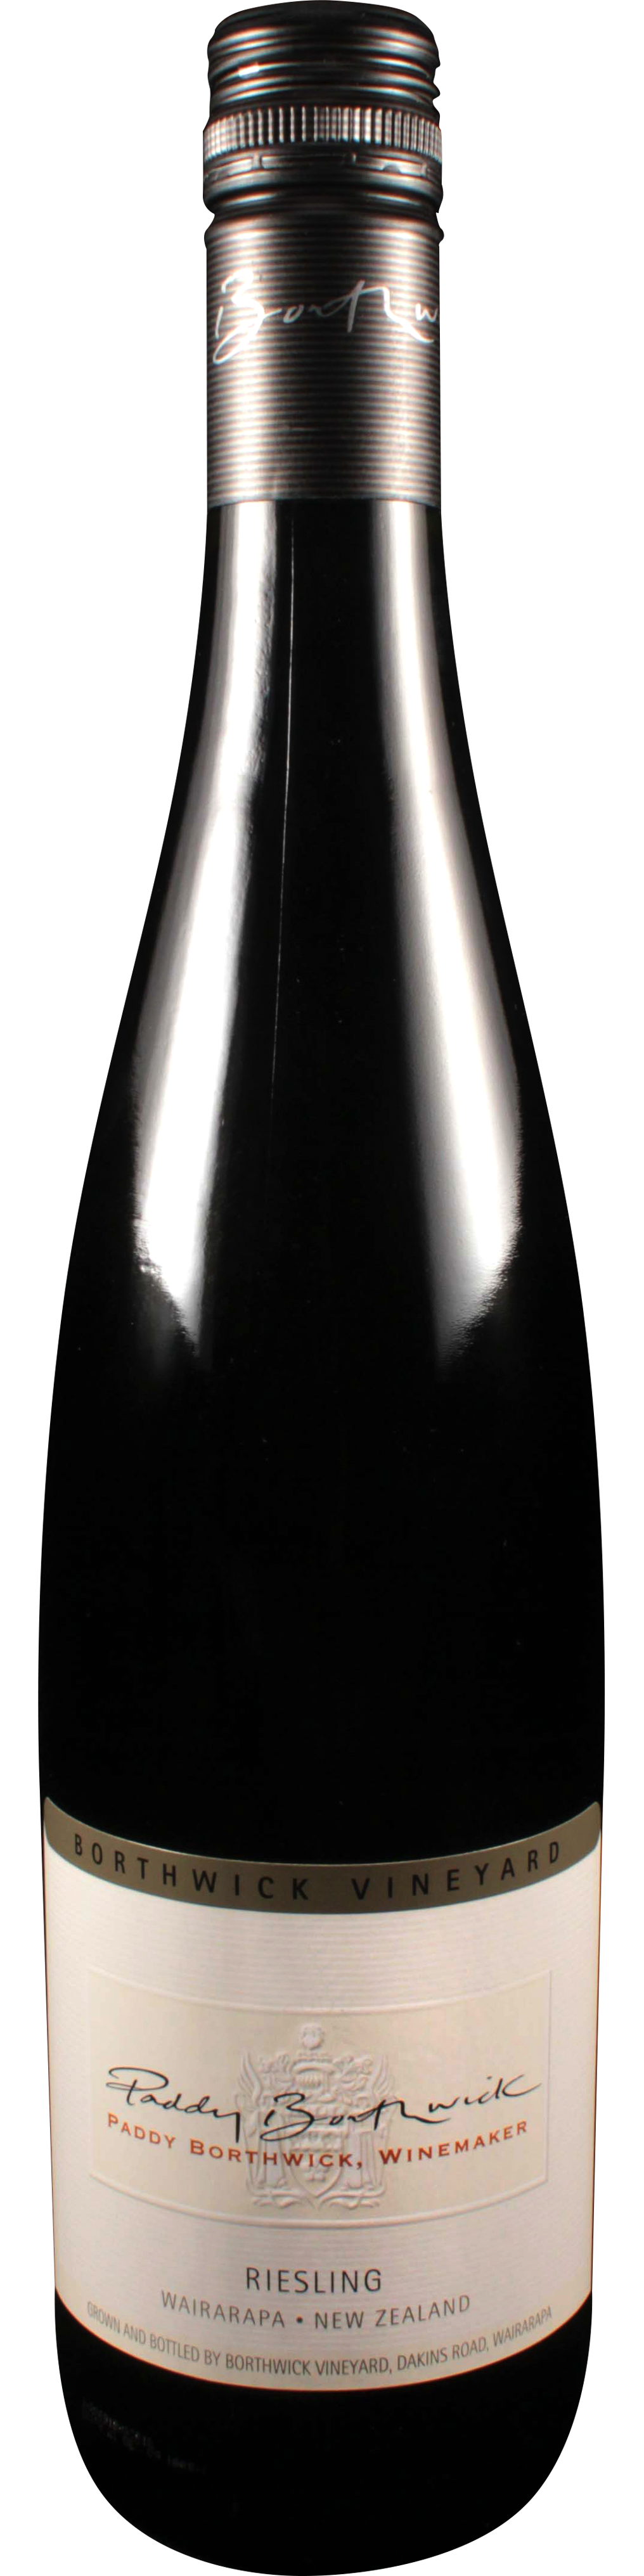 Bottle shot of 2014 Paddy Borthwick Riesling